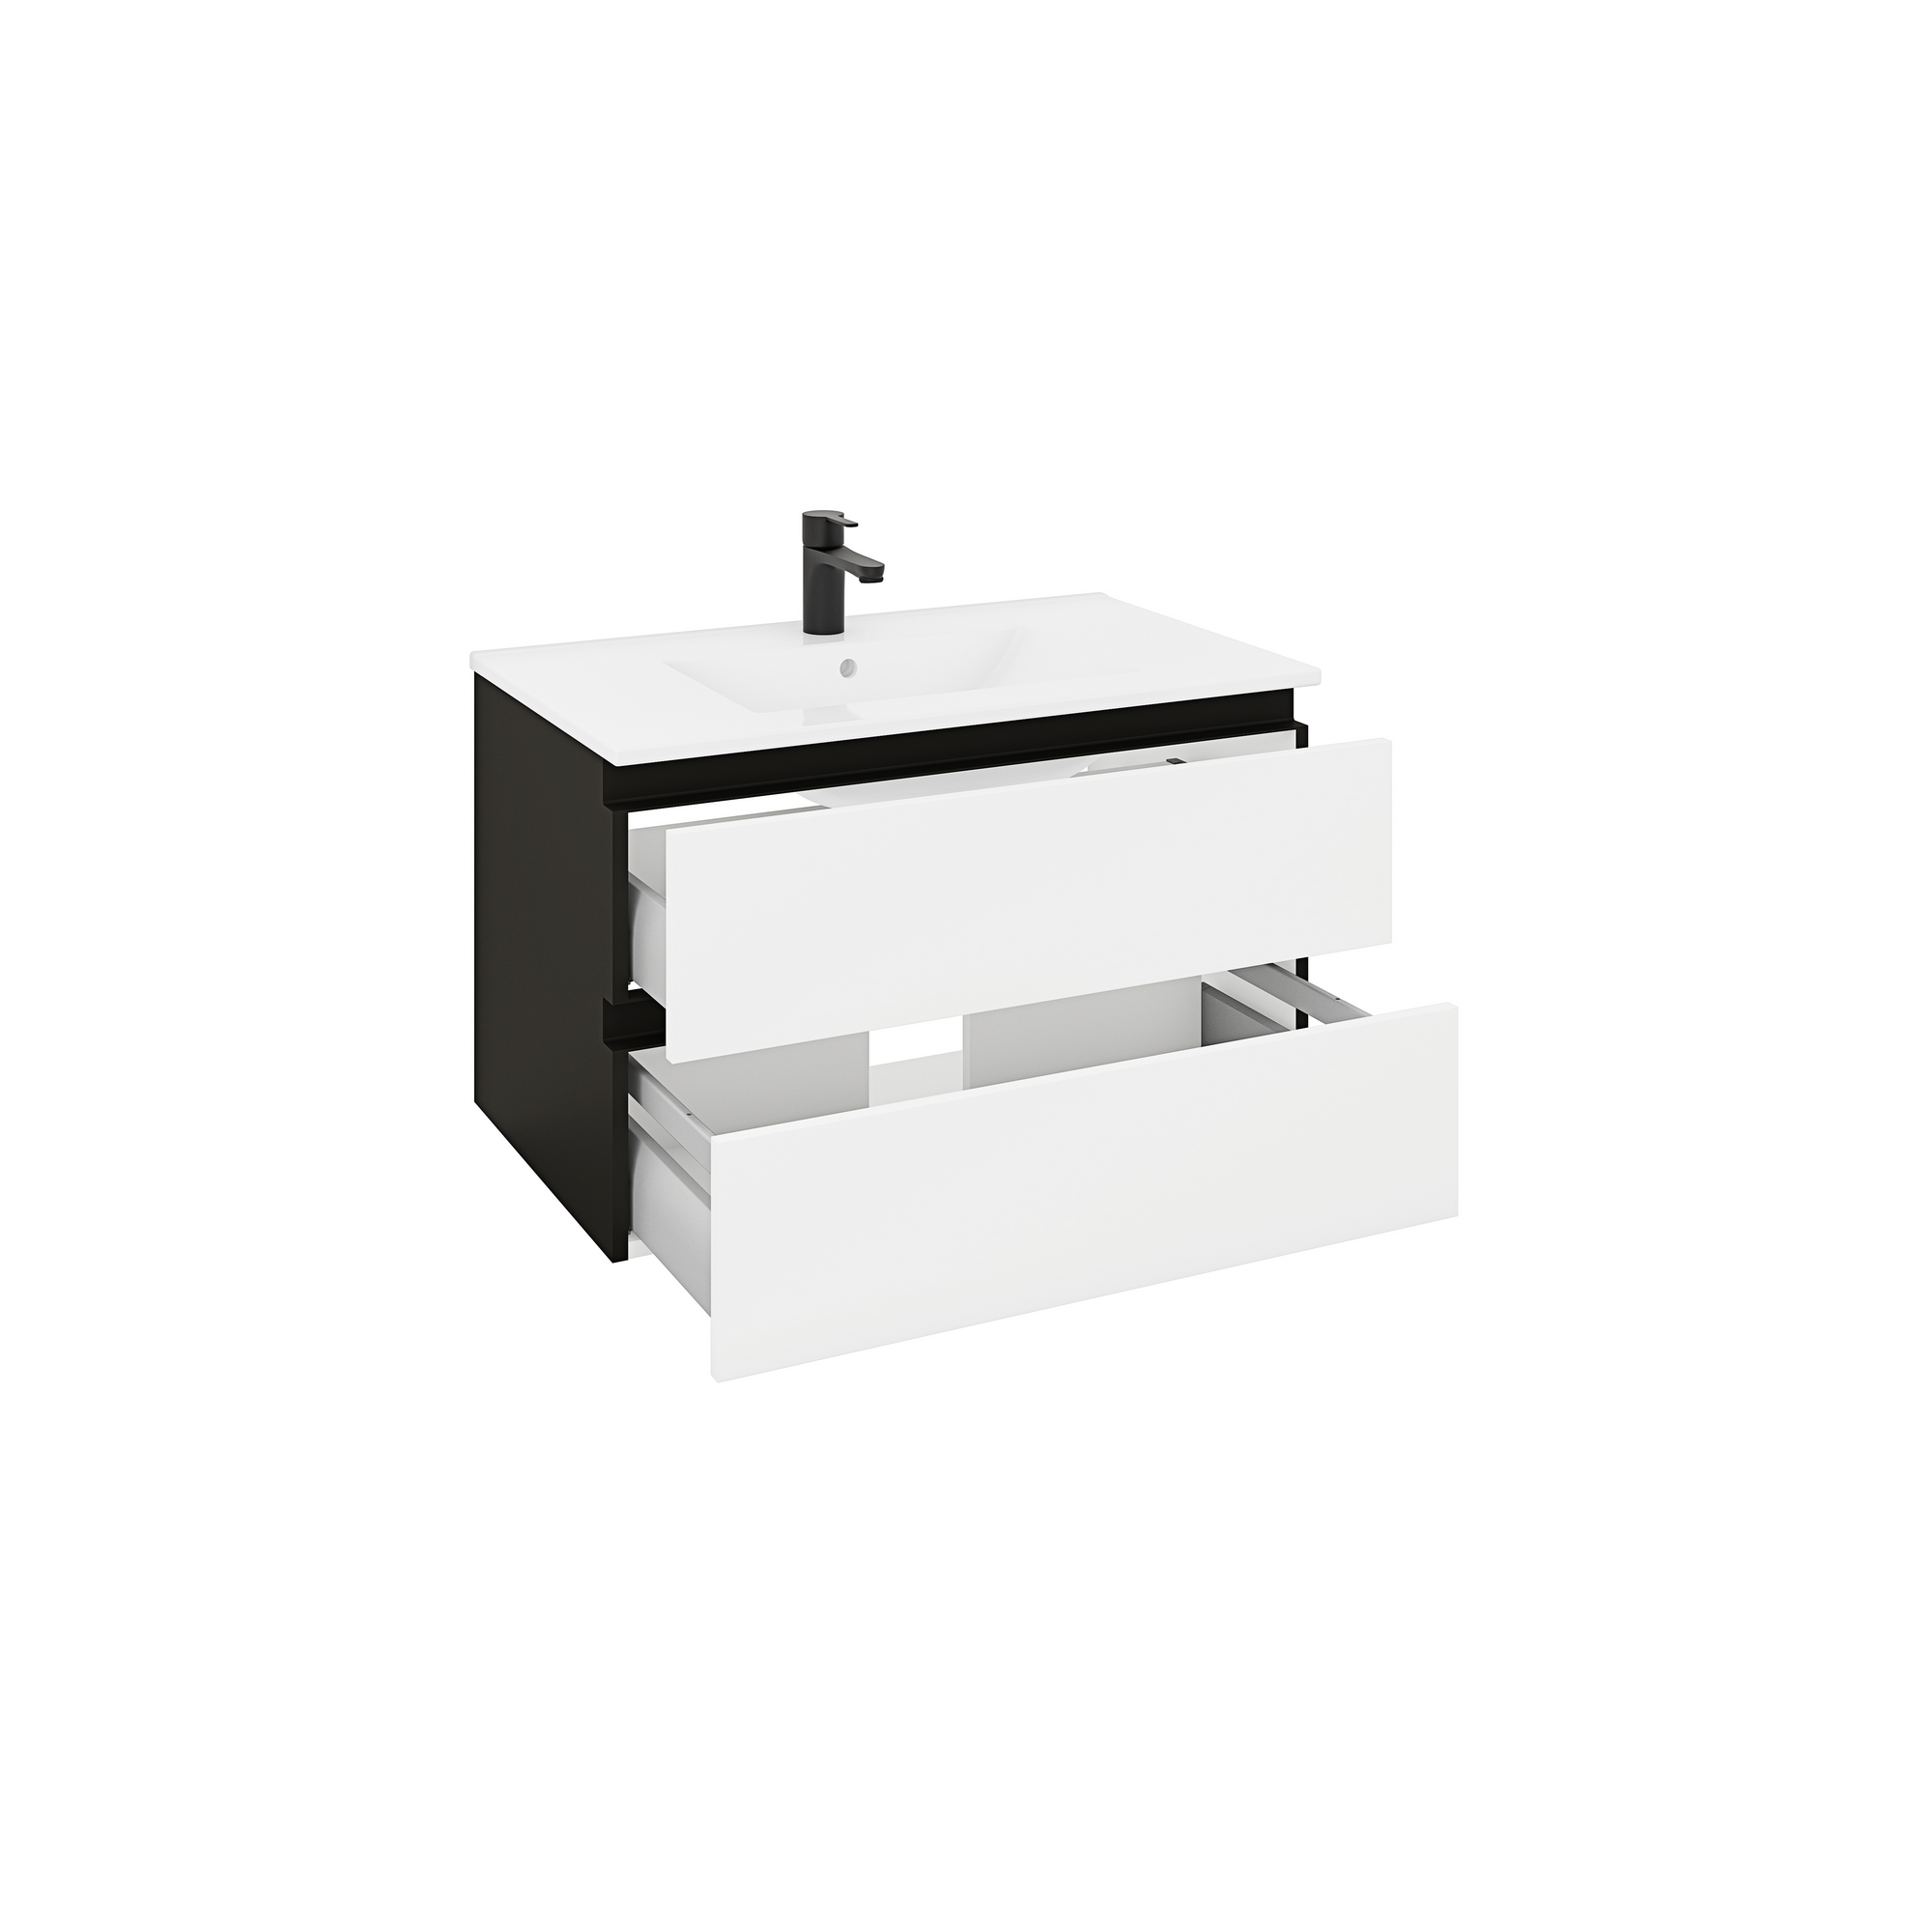 Waschtischunterschrank 'OPTIpremio 2510clarus' weiß, schwarz 82 x 47,8 x 47 cm + product picture